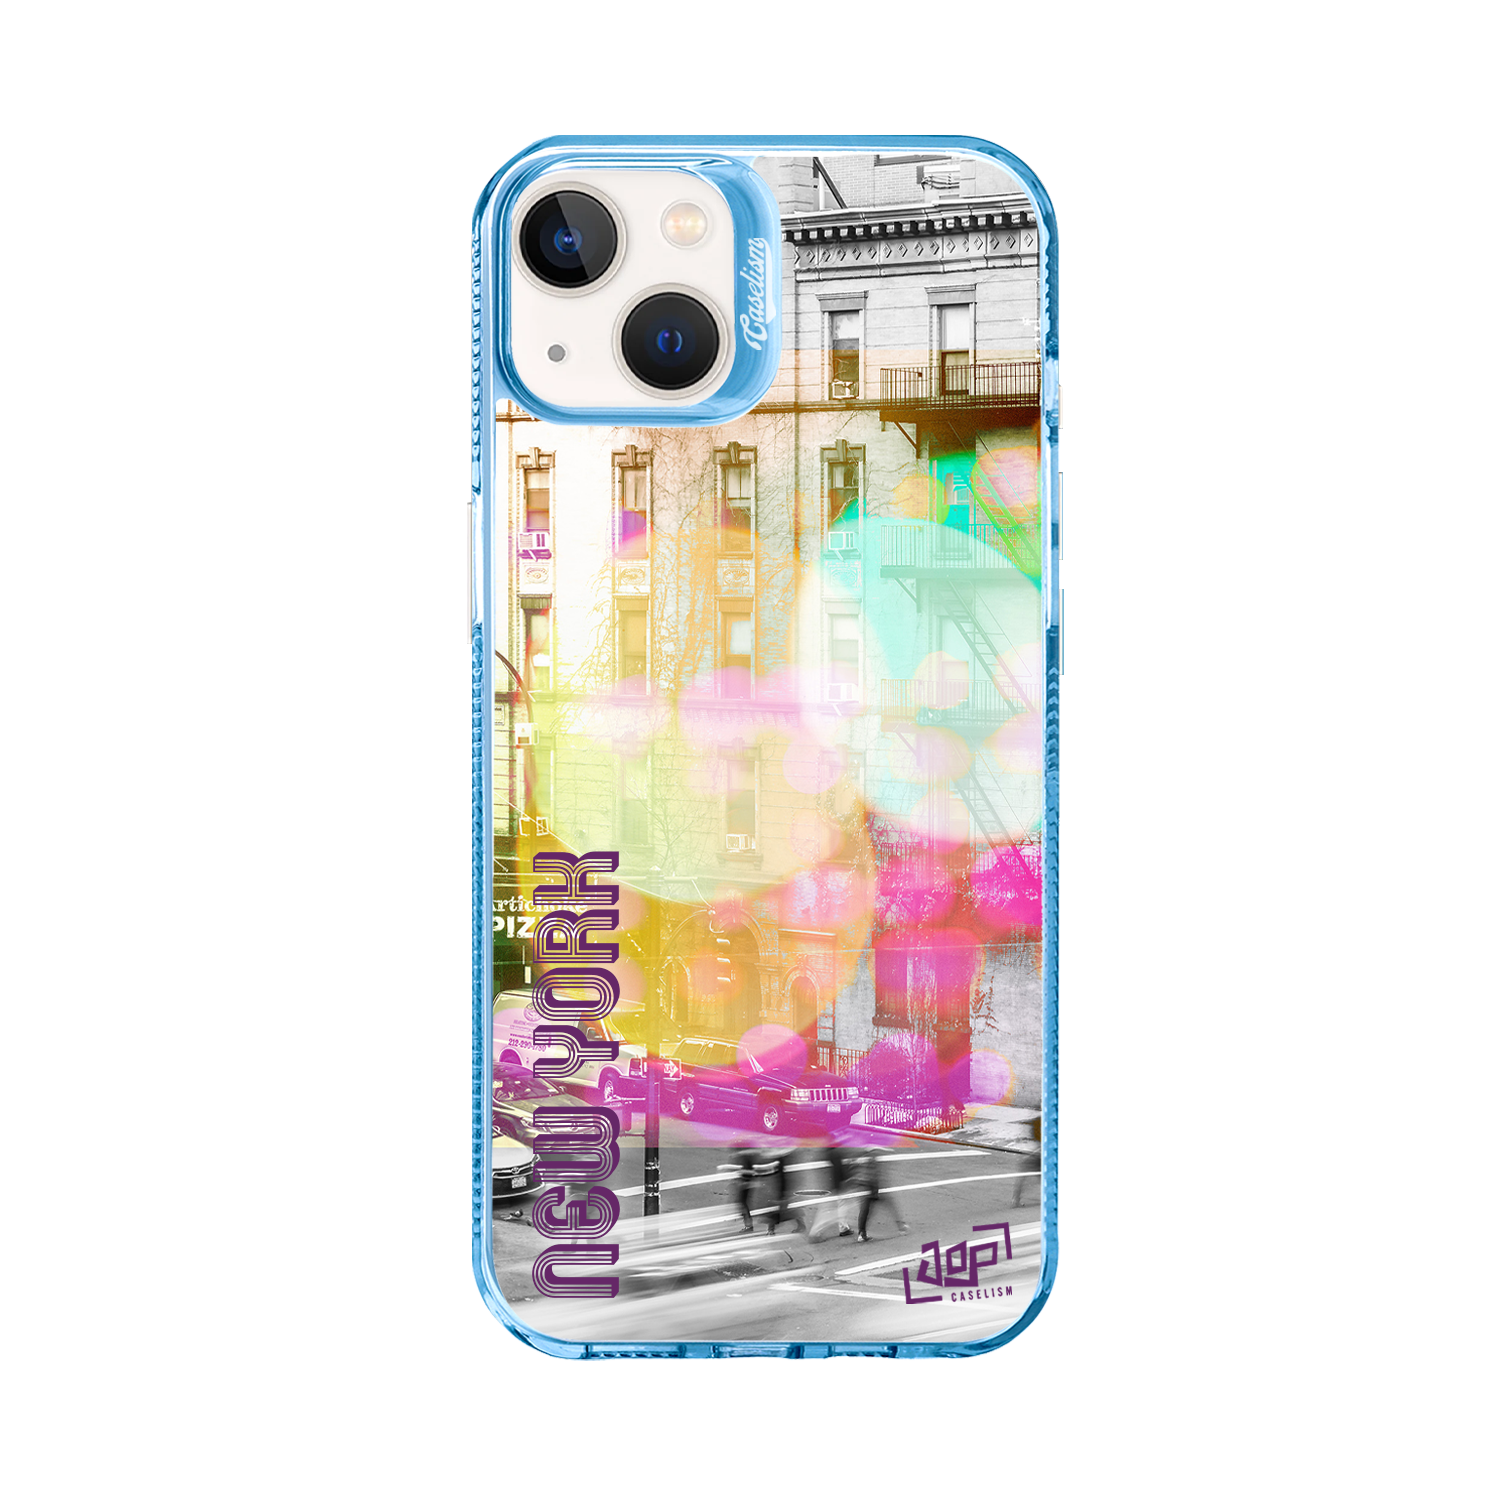 JOEL005 - ColorLite Case for iPhone